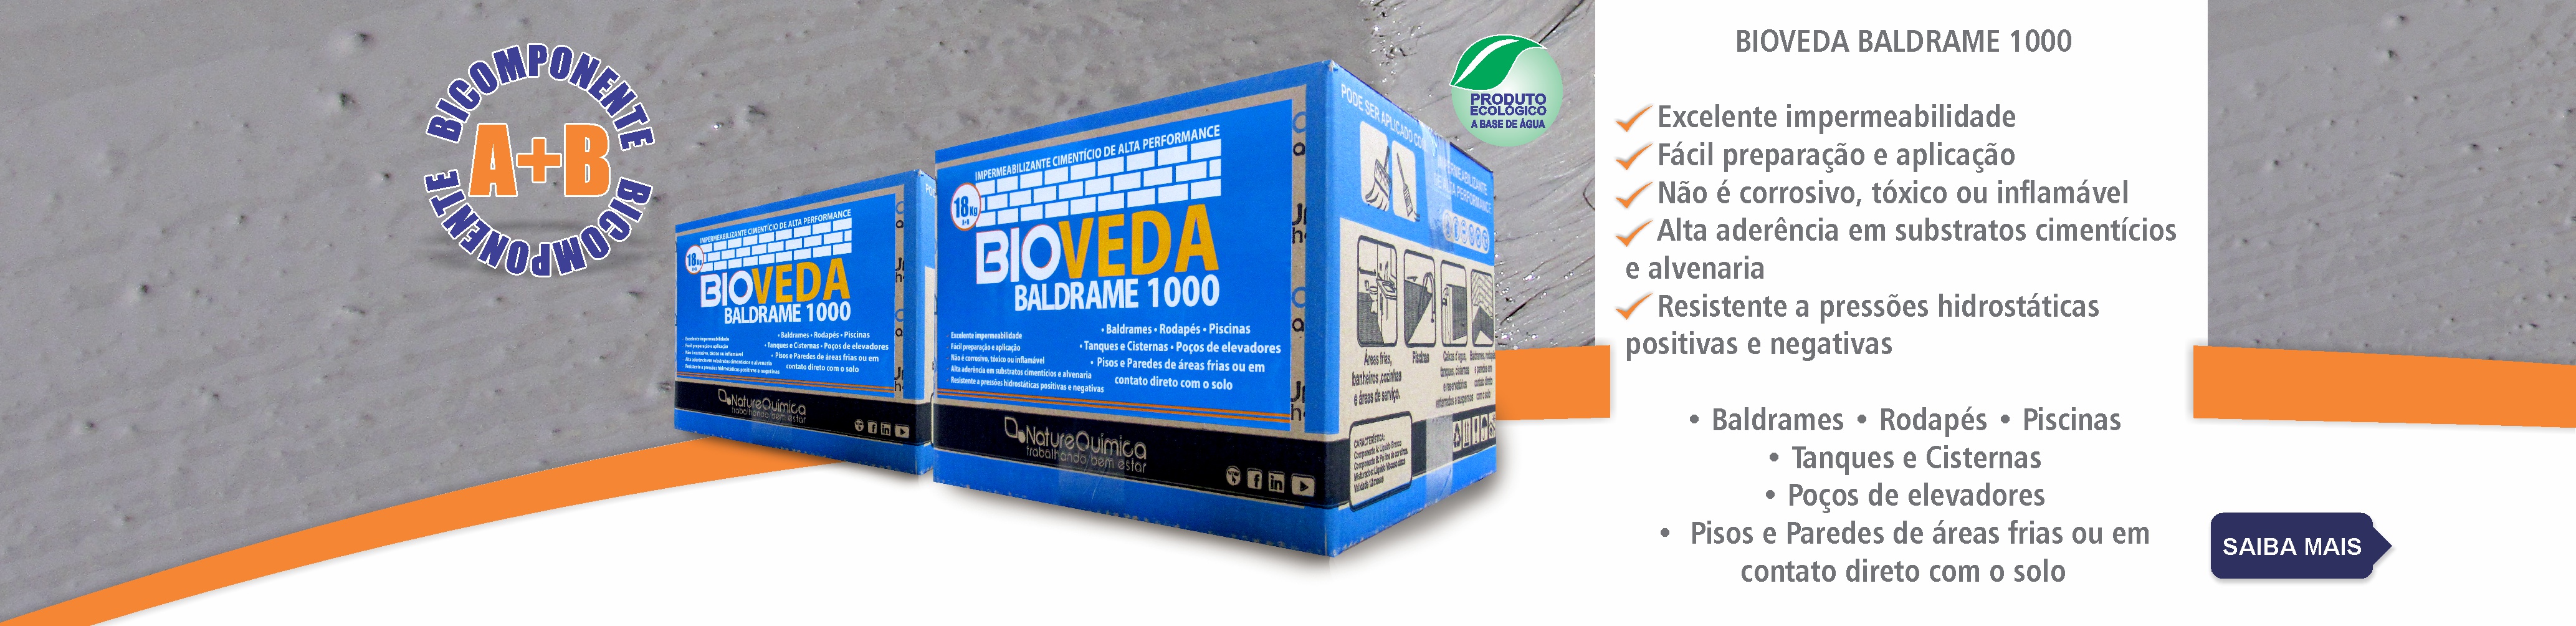 BIOVEDA BALDRAME 1000